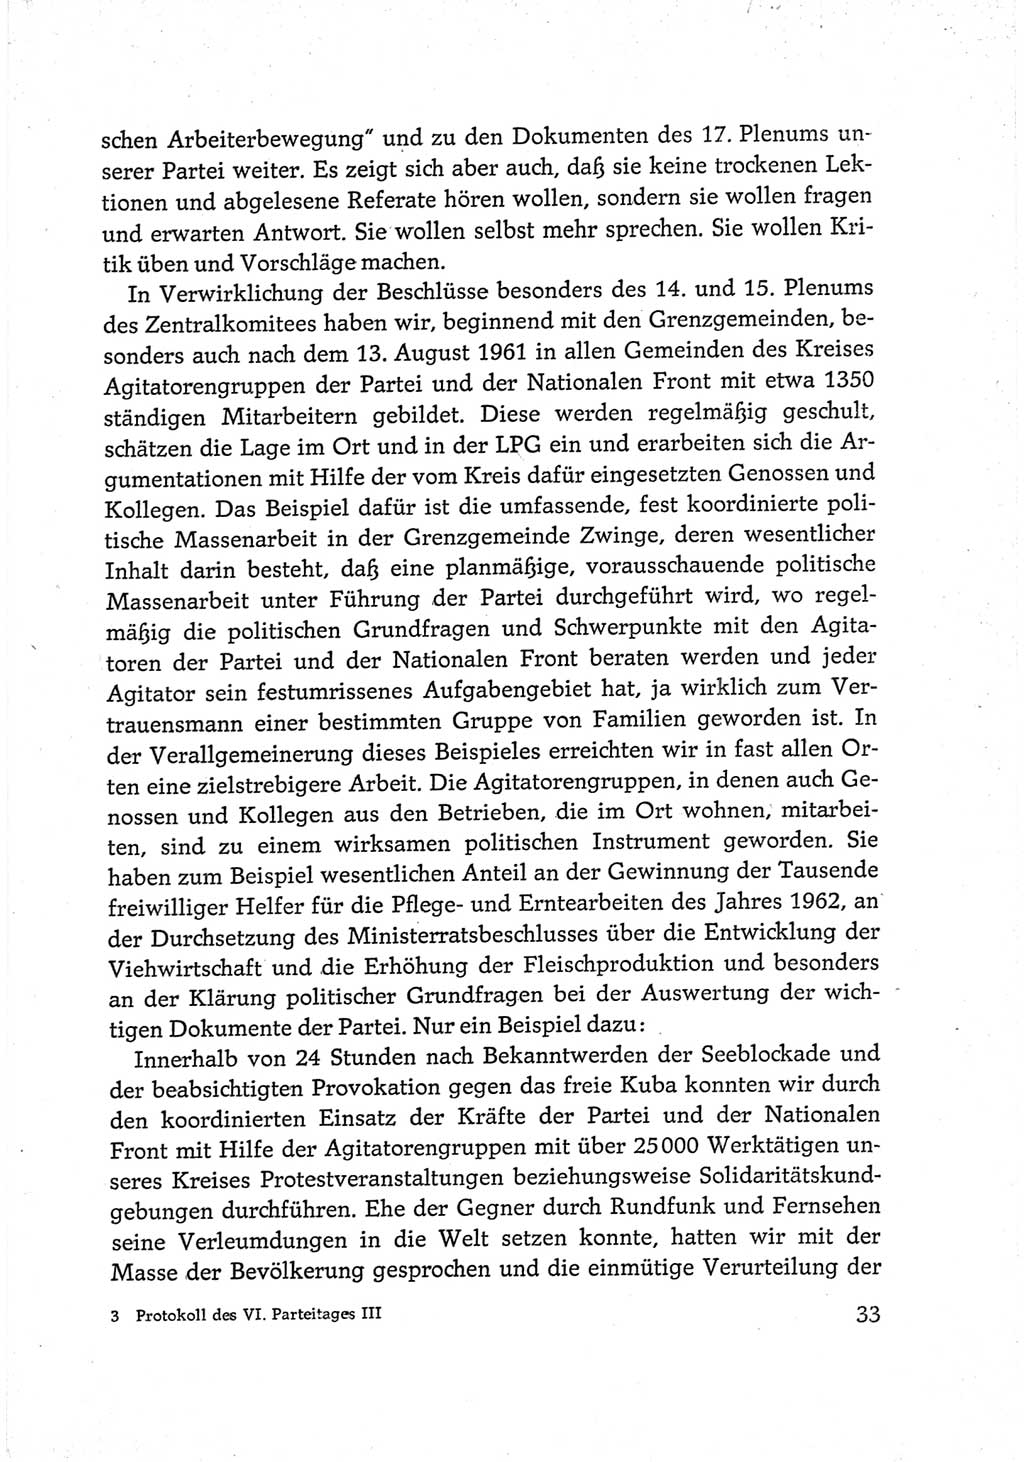 Protokoll der Verhandlungen des Ⅵ. Parteitages der Sozialistischen Einheitspartei Deutschlands (SED) [Deutsche Demokratische Republik (DDR)] 1963, Band Ⅲ, Seite 33 (Prot. Verh. Ⅵ. PT SED DDR 1963, Bd. Ⅲ, S. 33)